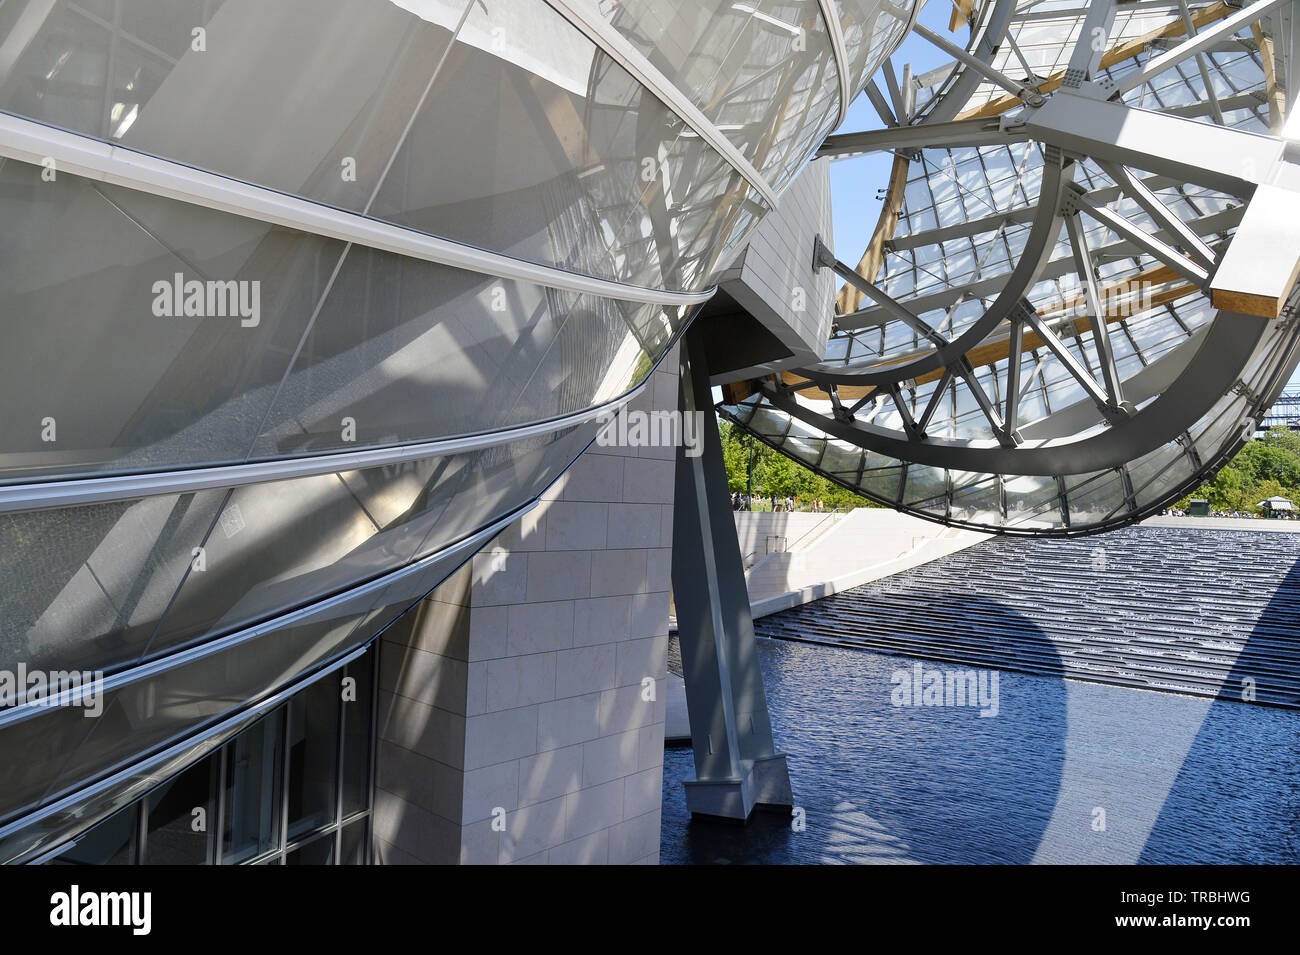 Fondation Louis Vuitton - Bois de Boulogne - Paris - France Stock Photo -  Alamy